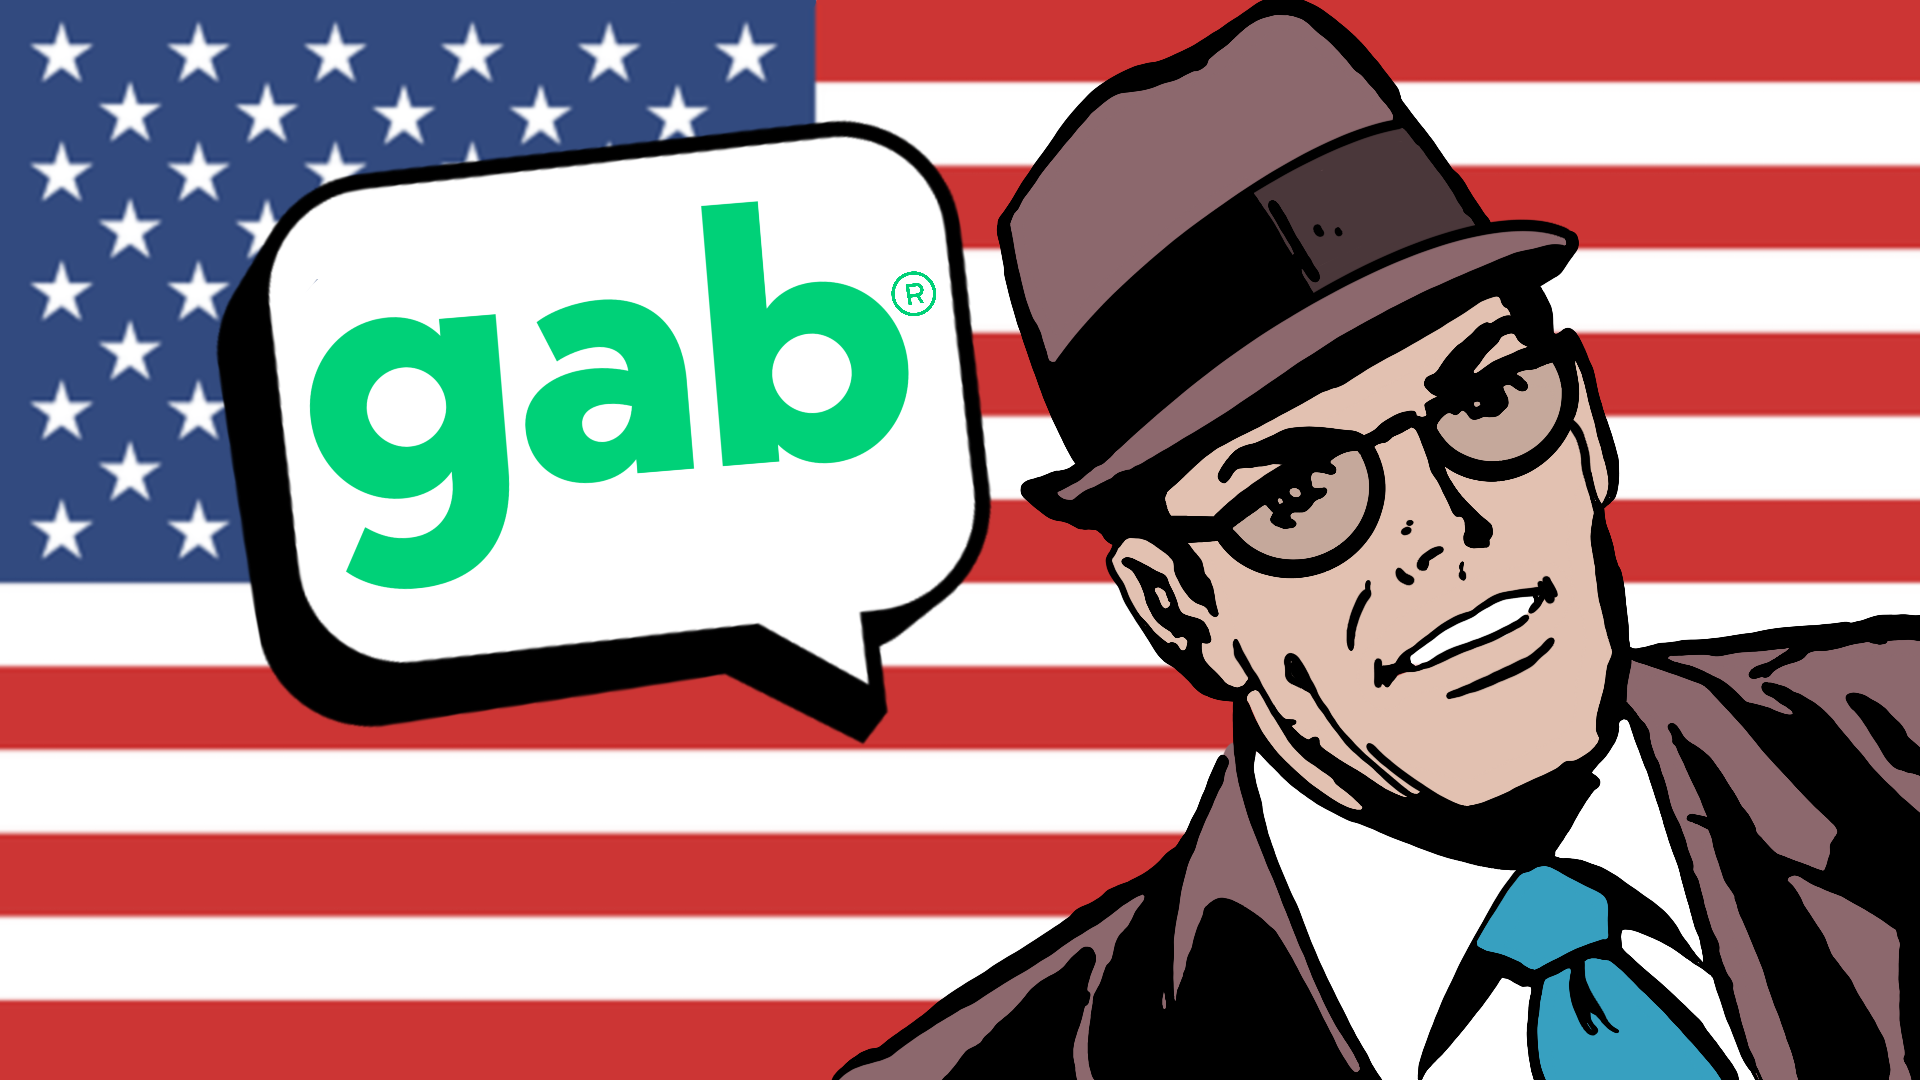 news.gab.com